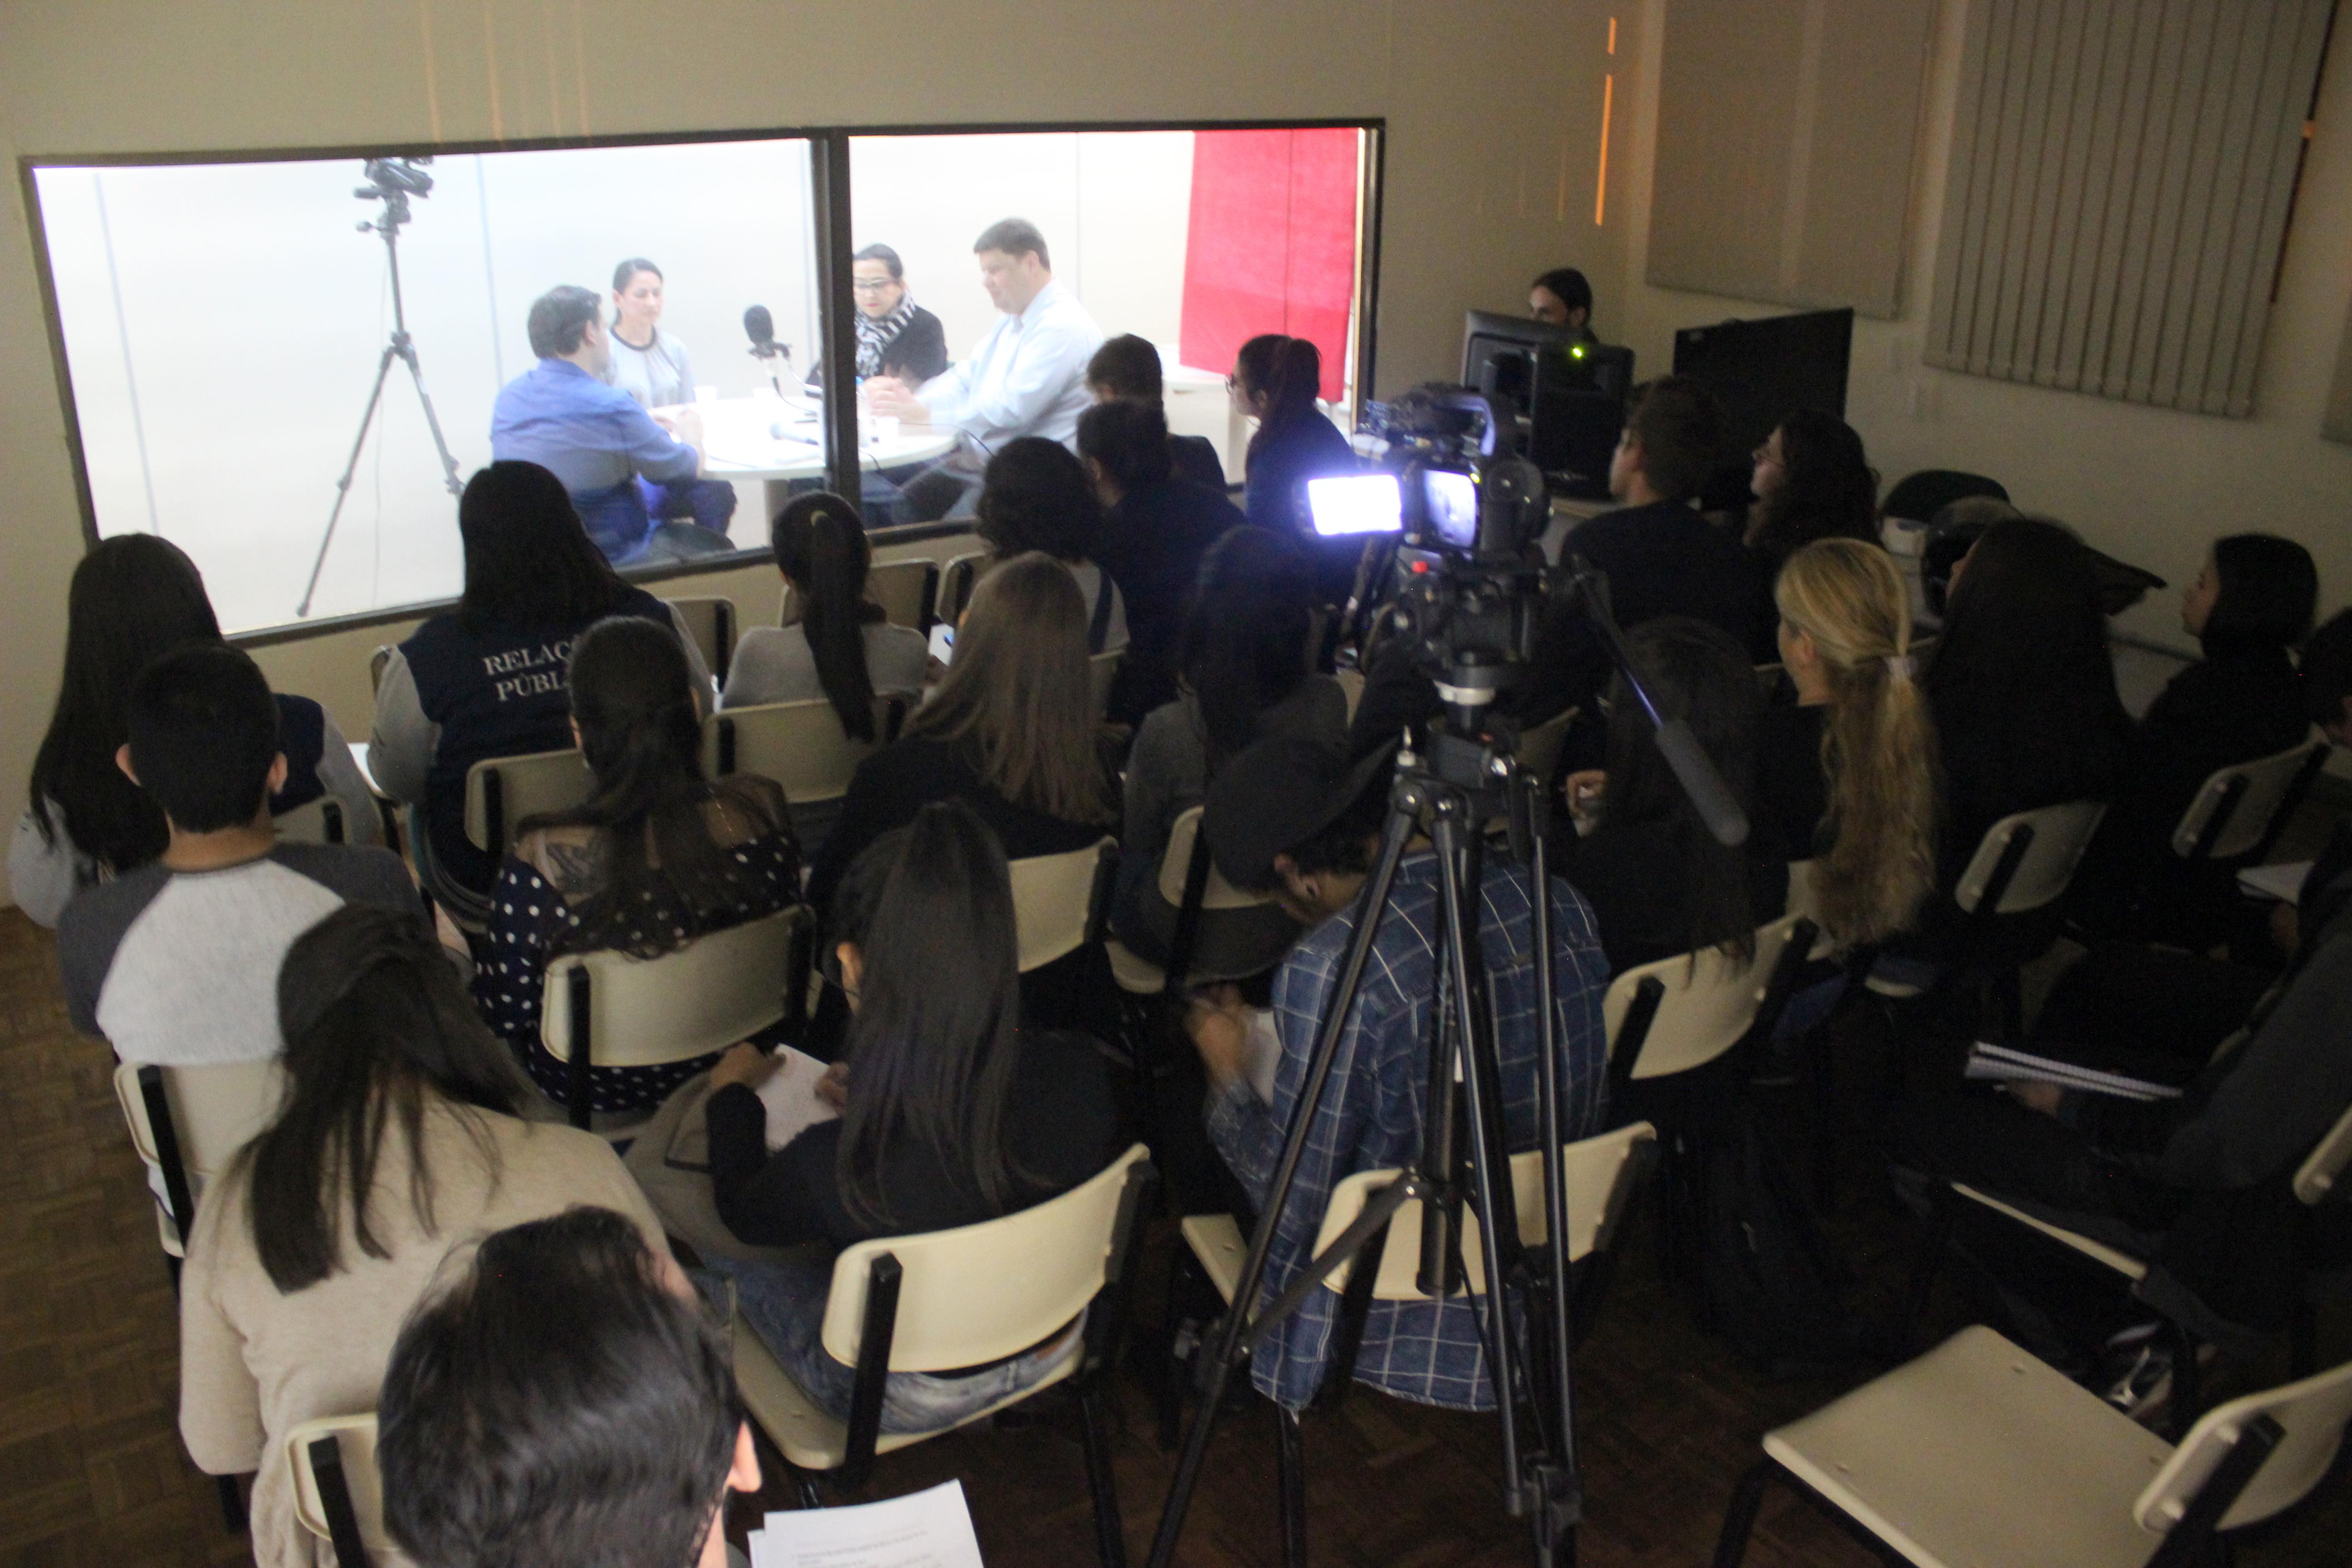 Estudantes em uma sala assistem participantes em grupo focal em outra sala, através de um vidro